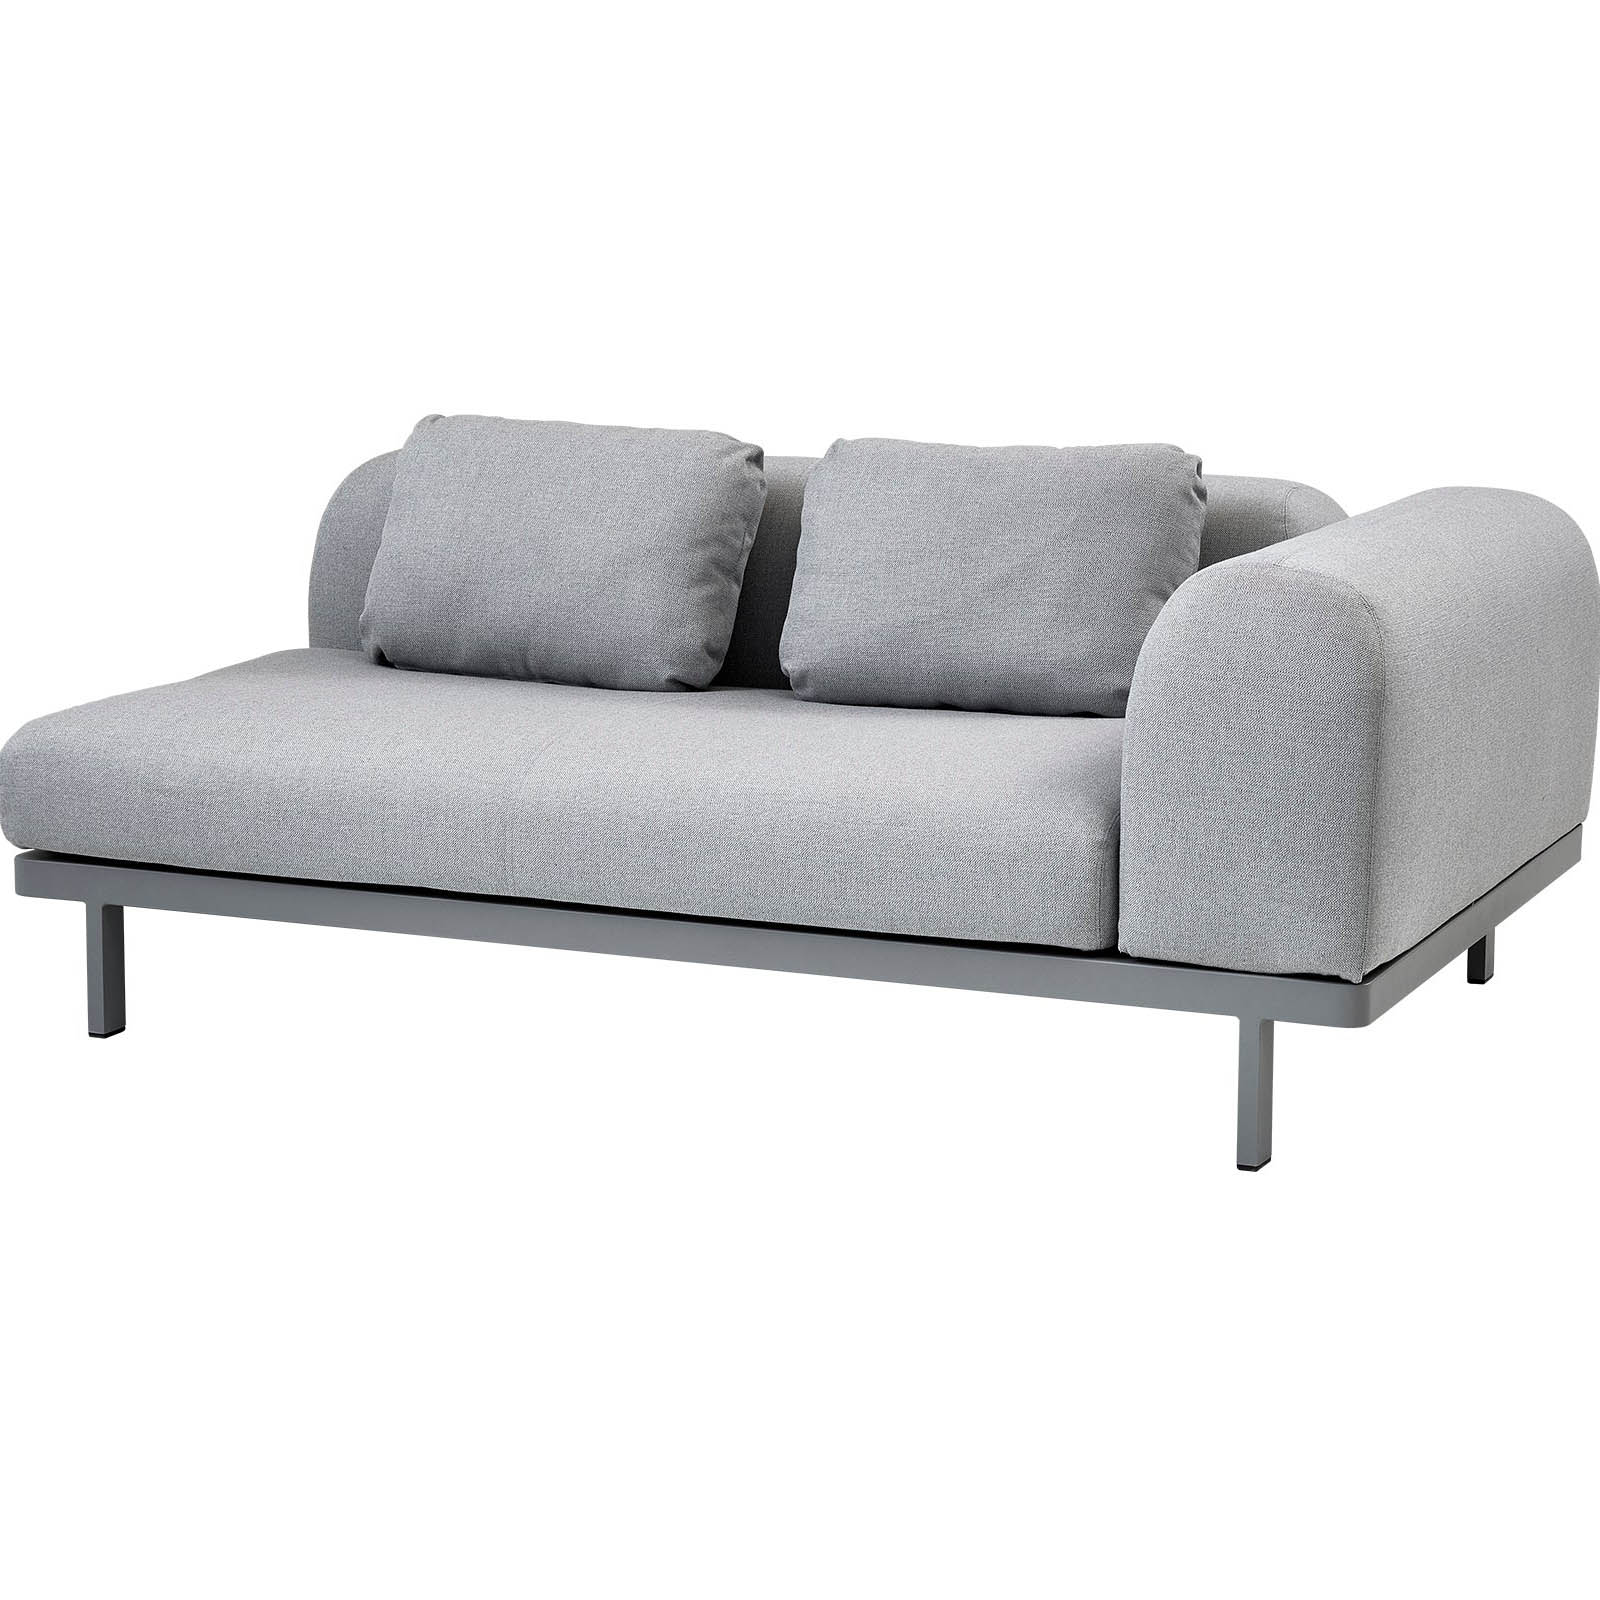 Space Seitenkissen 2-Sitzer Sofa aus Cane-line AirTouch in Light Grey